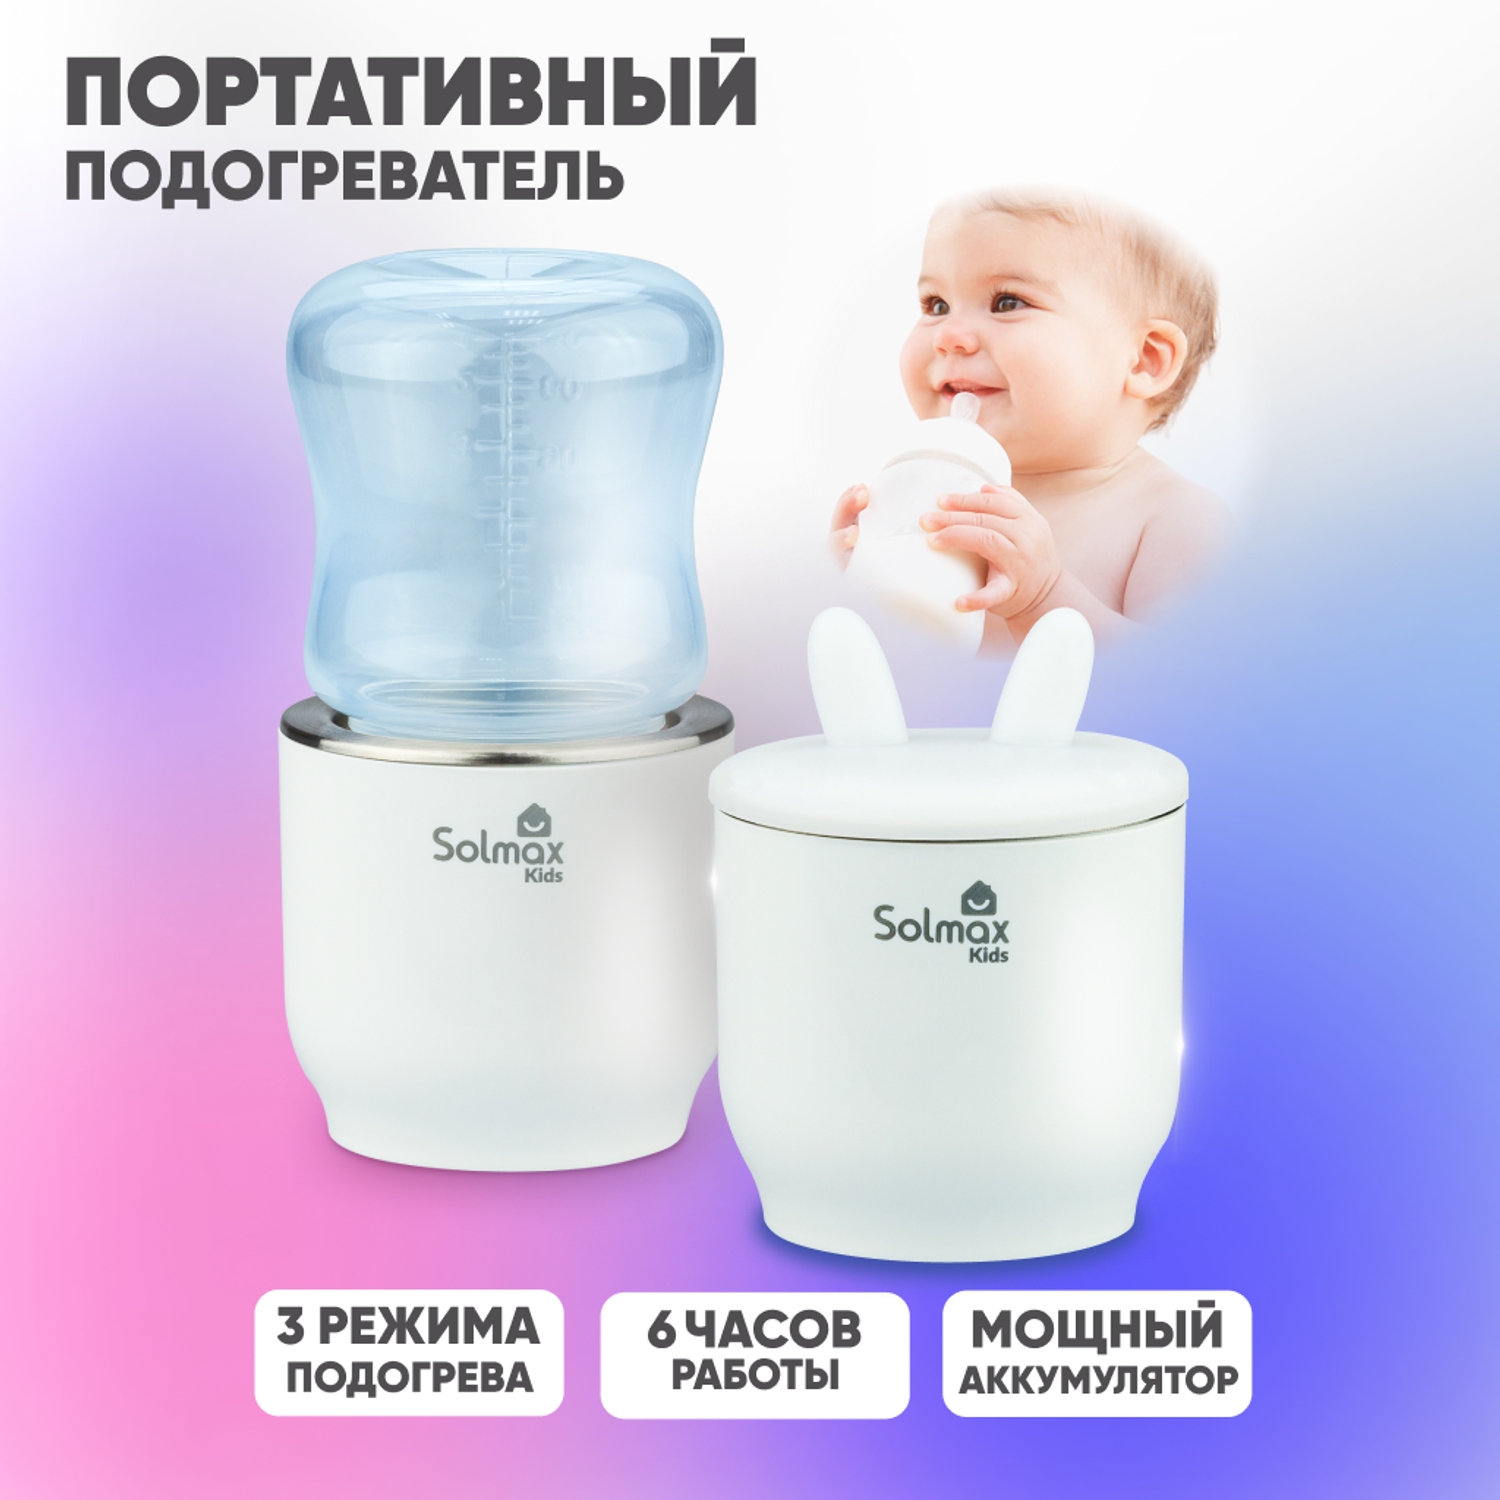 Портативный подогреватель Solmax для бутылочек и детского питания переносной белый - фото 1